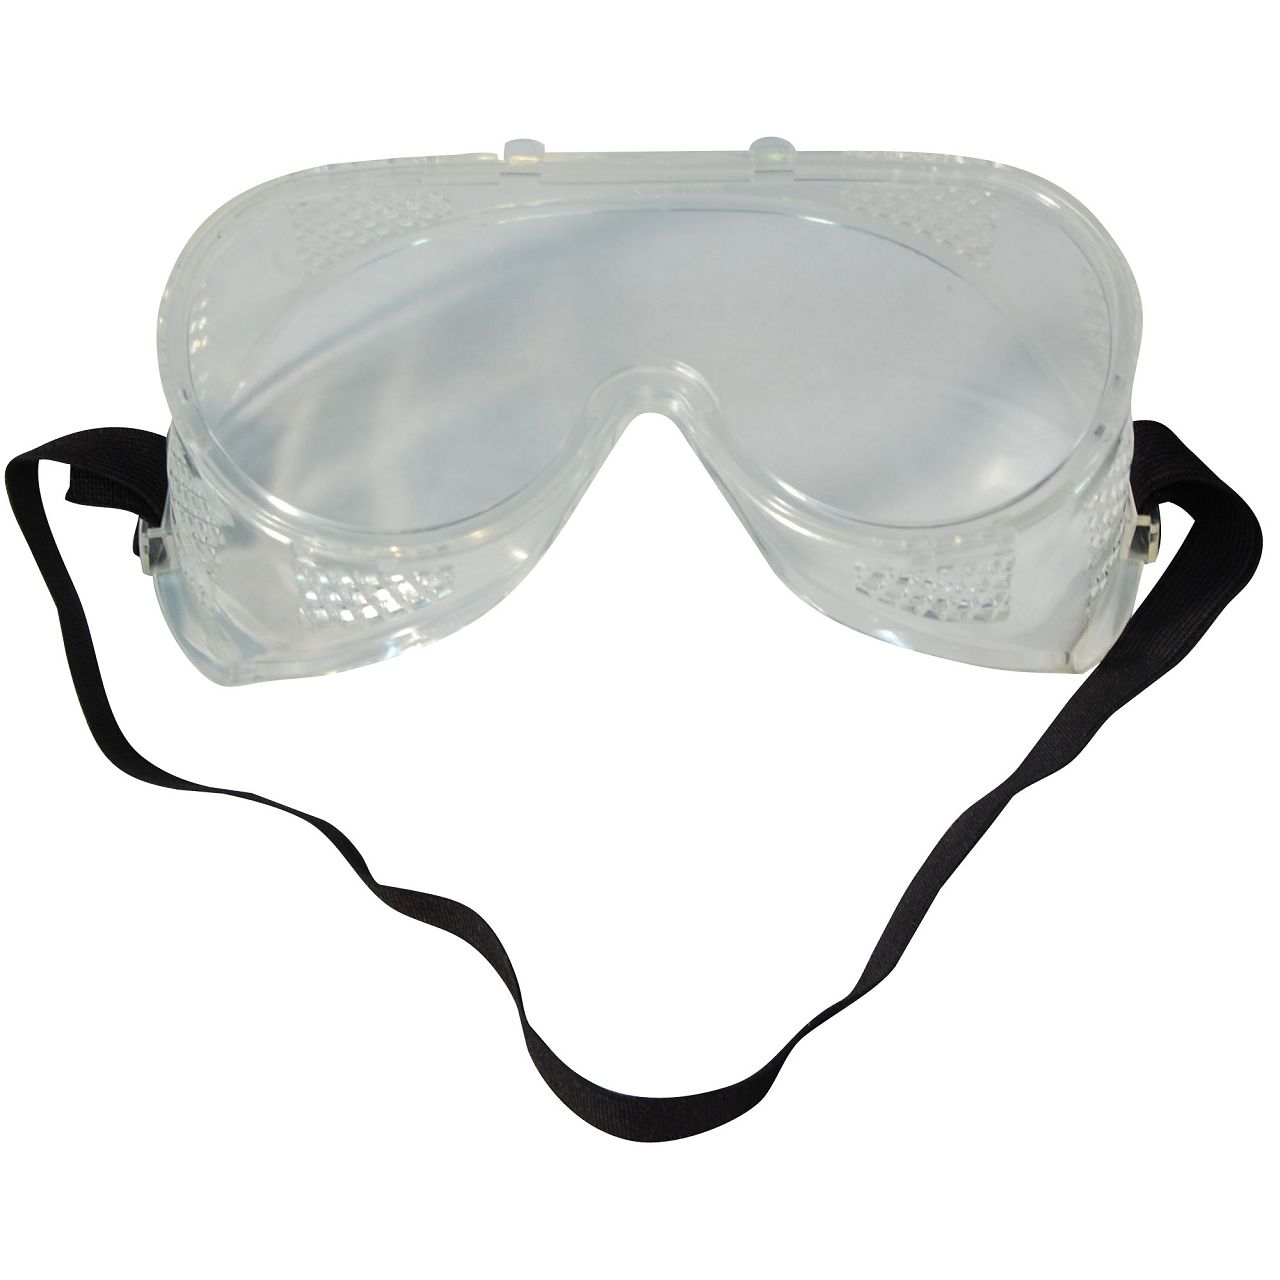 Schutzbrille Brille Augenschutz Arbeitsschutzbrille Laborbrille Überbrille DIN 0196 CE